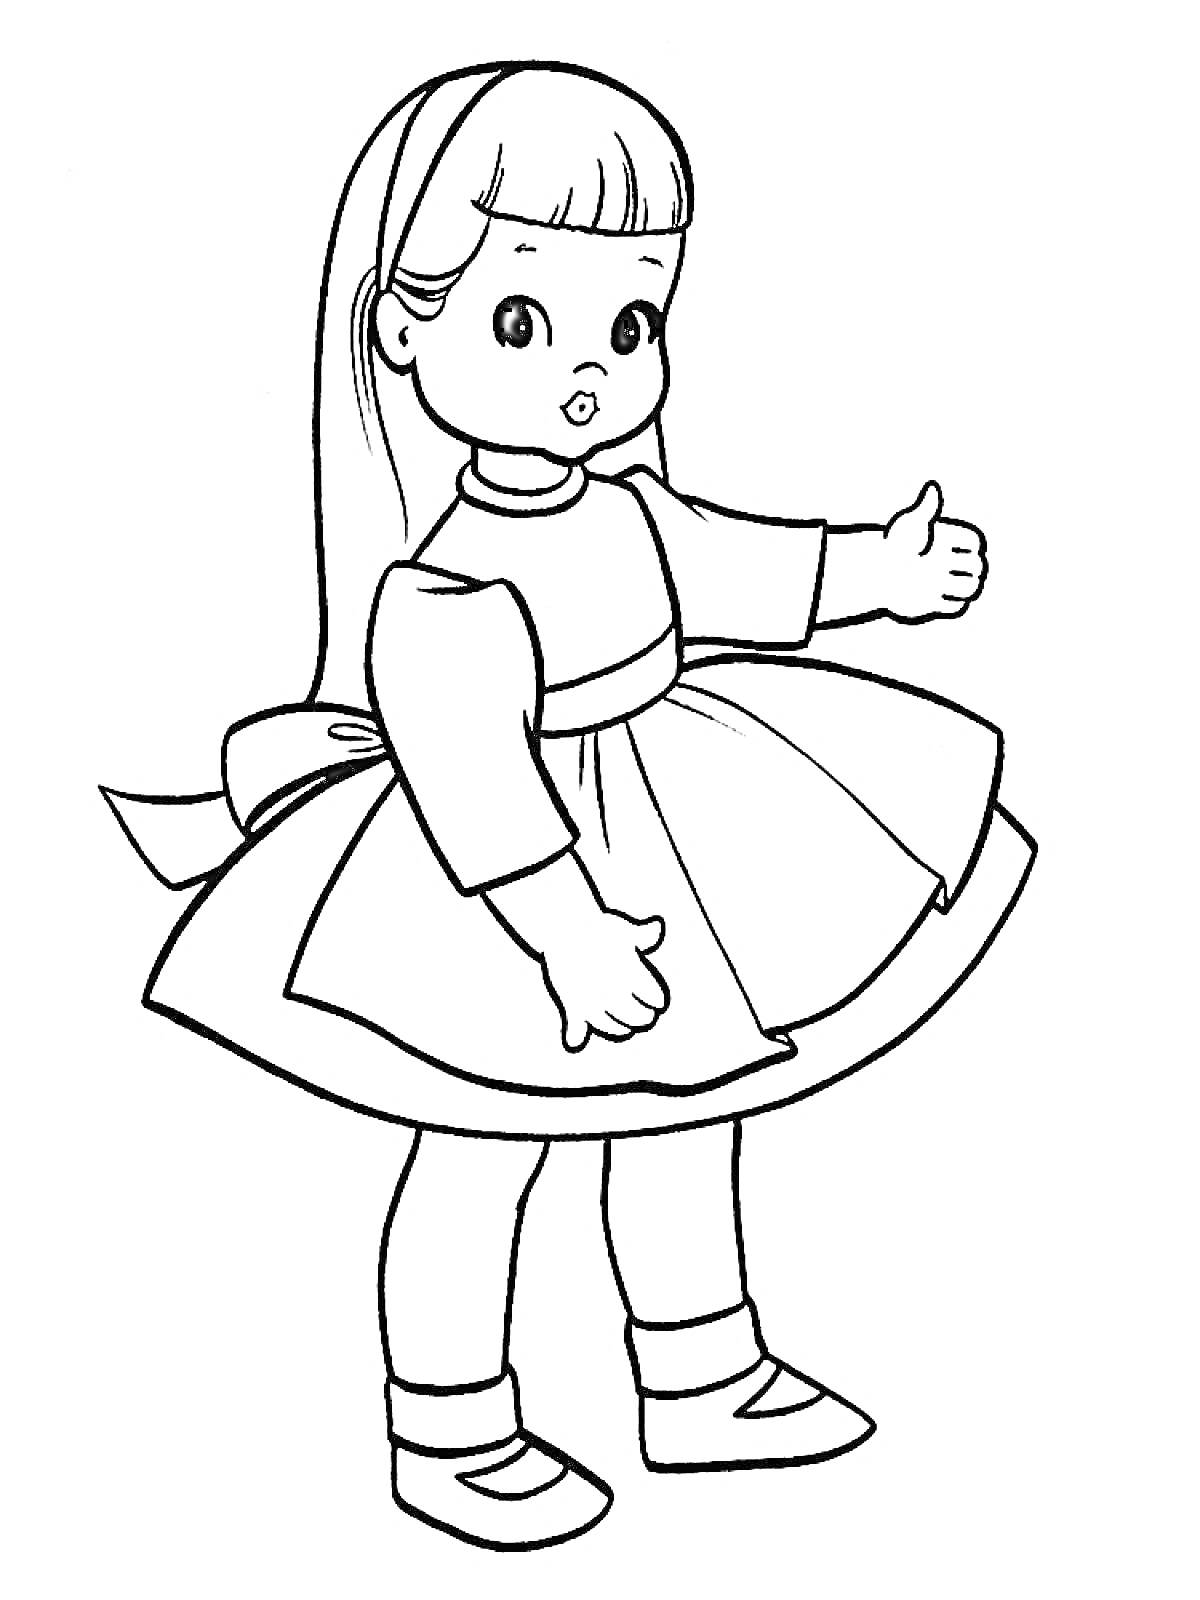 Раскраска Кукла с бантом на голове и платьем